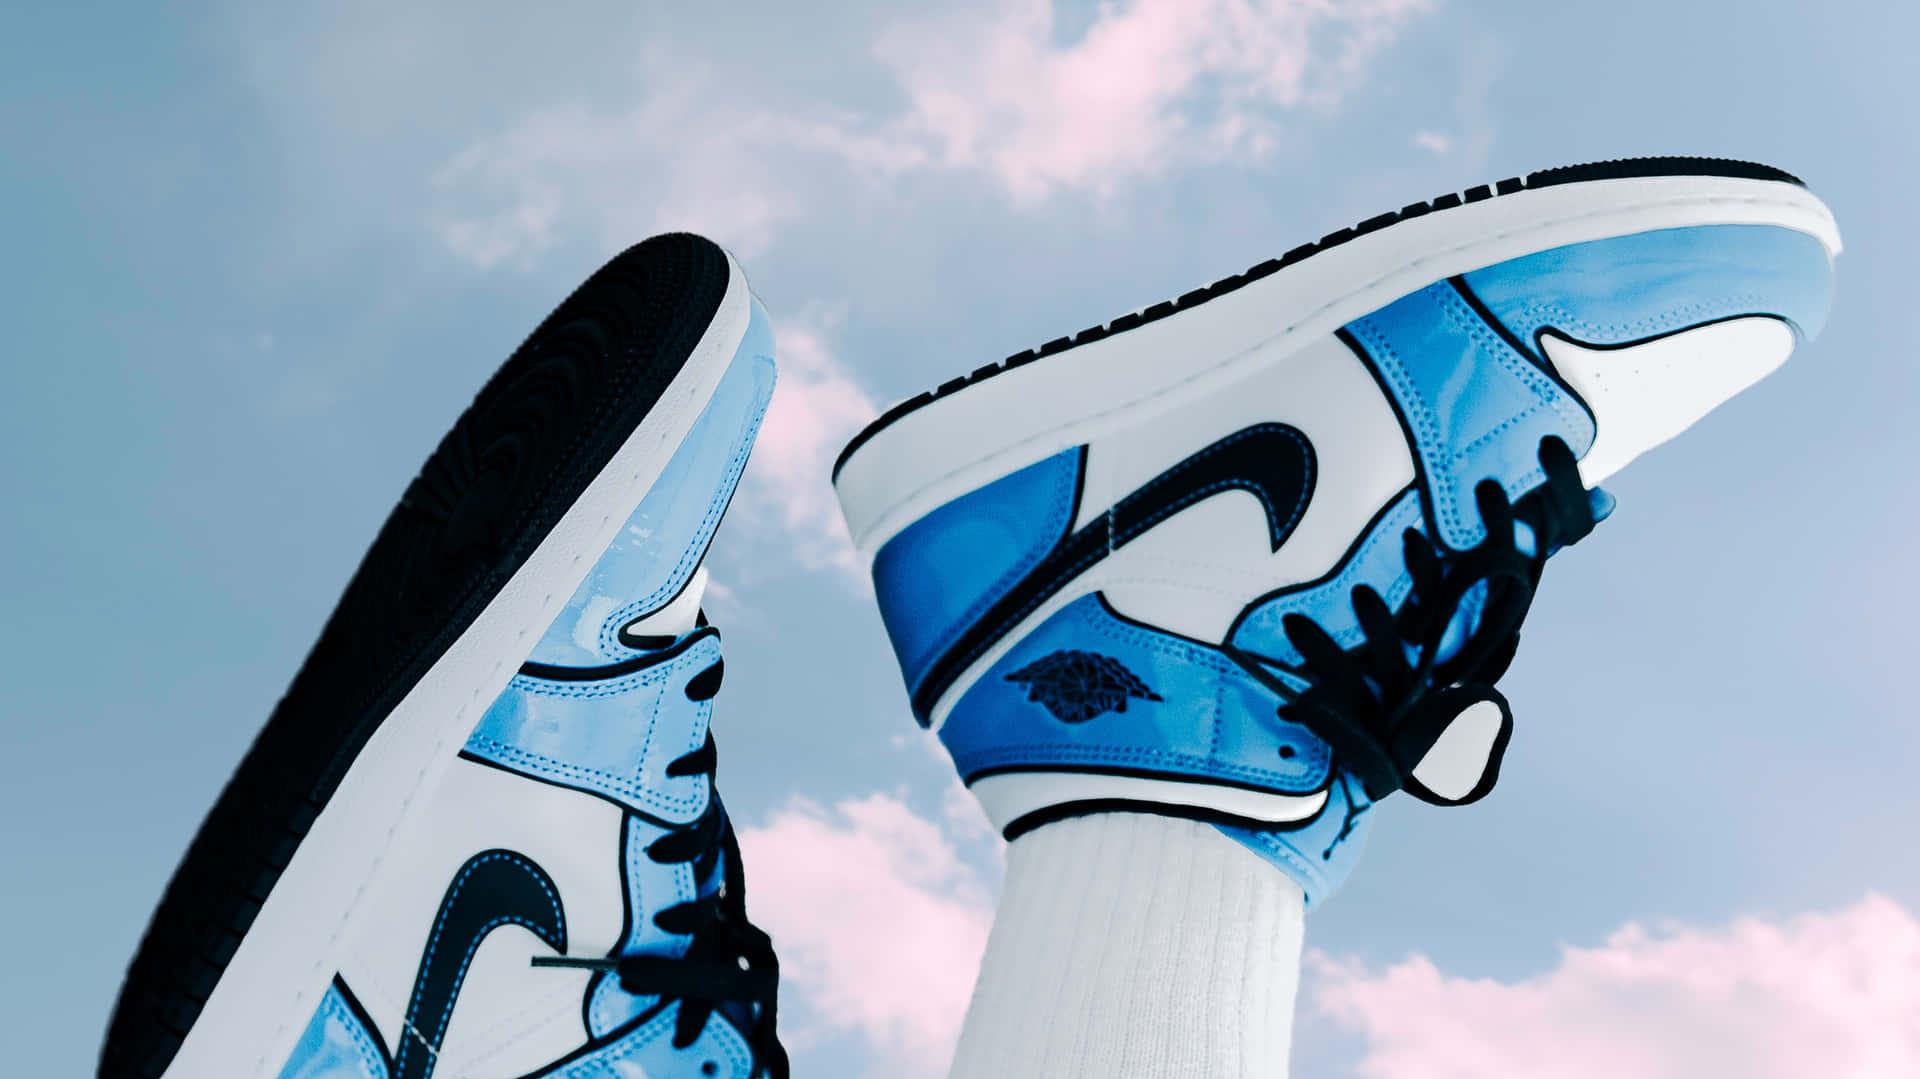 [53+] Nike Shoes 4k Wallpapers | WallpaperSafari